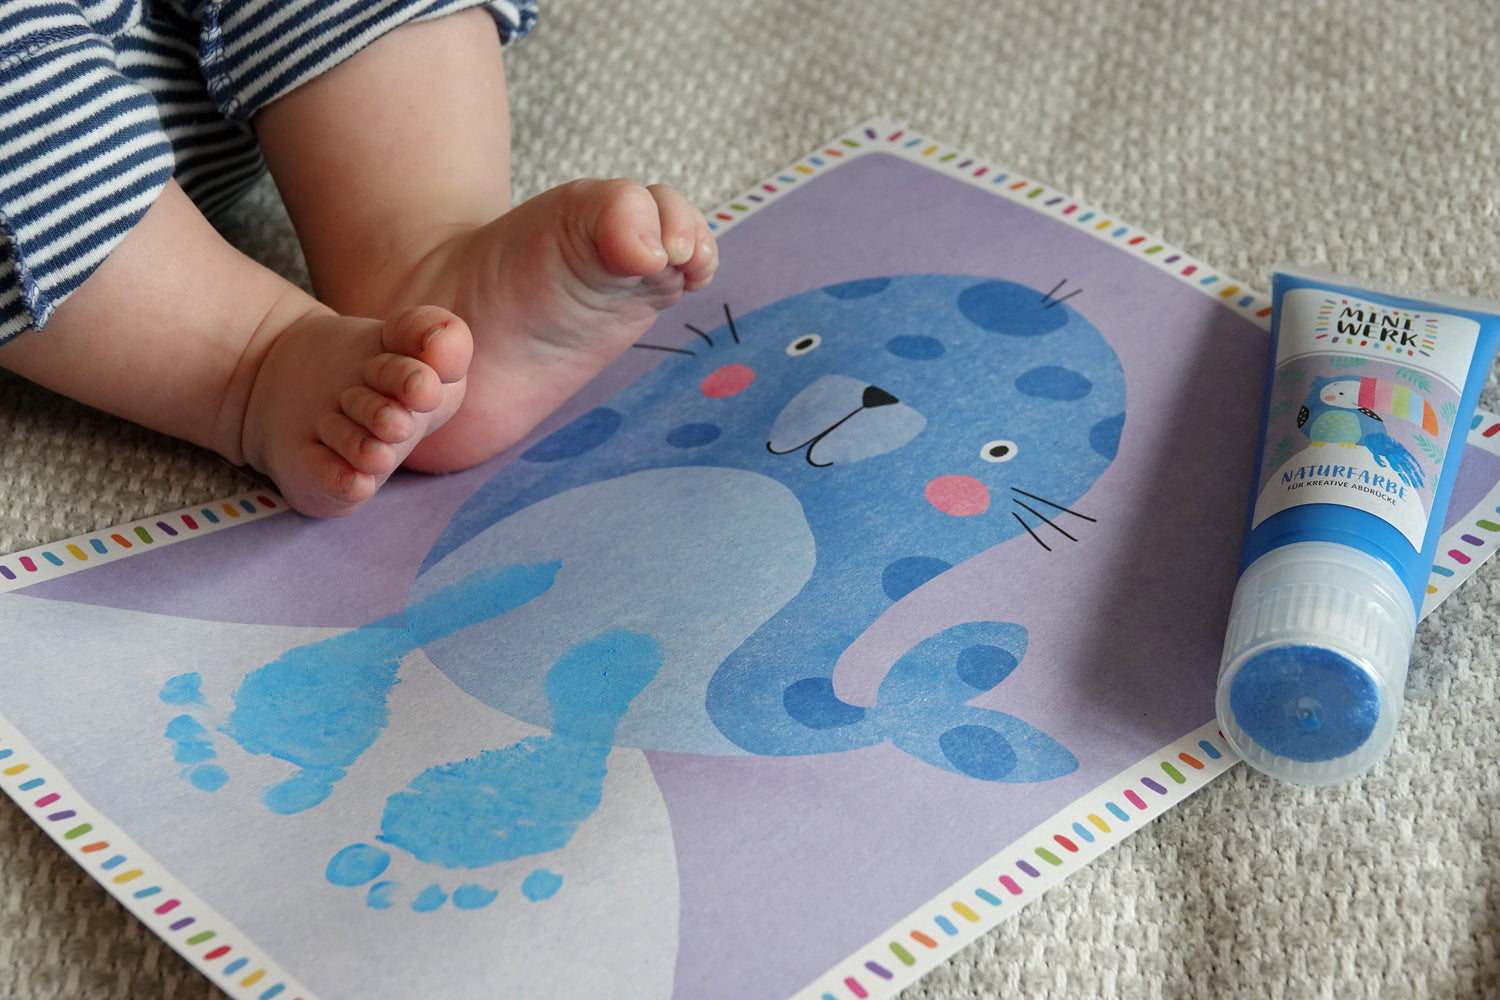 Geburtenkarten oder persönliche Motivkarten mit den Fußabdrücken von Babys ergänzen und zu einer wunderschönen Erinnerung ausarbeiten.